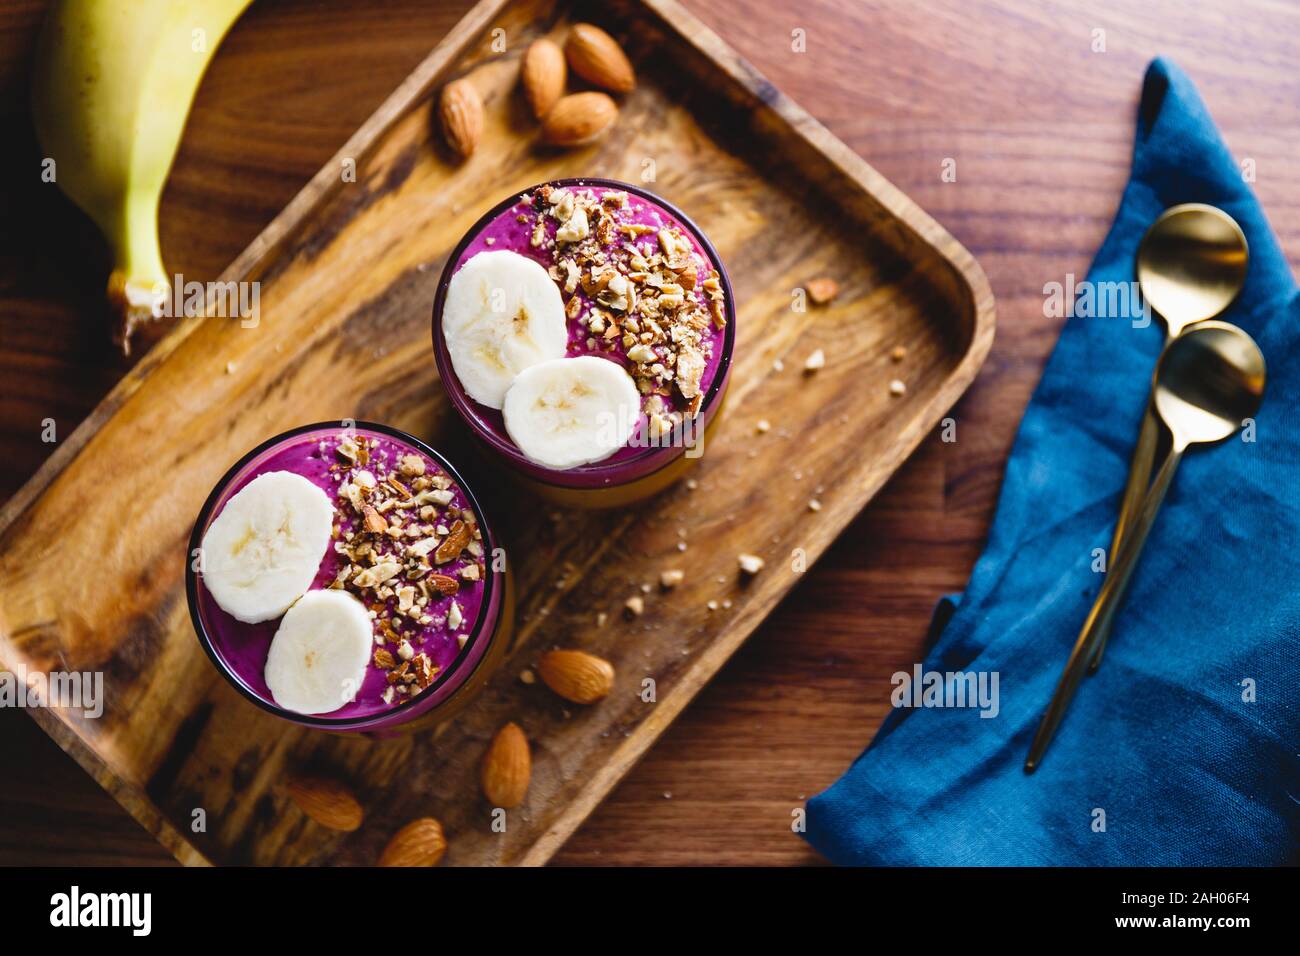 Vista dall'alto di due bicchieri con violet berry e frullato di banane sono serviti di mandorle schiacciate su un vassoio in legno Foto Stock